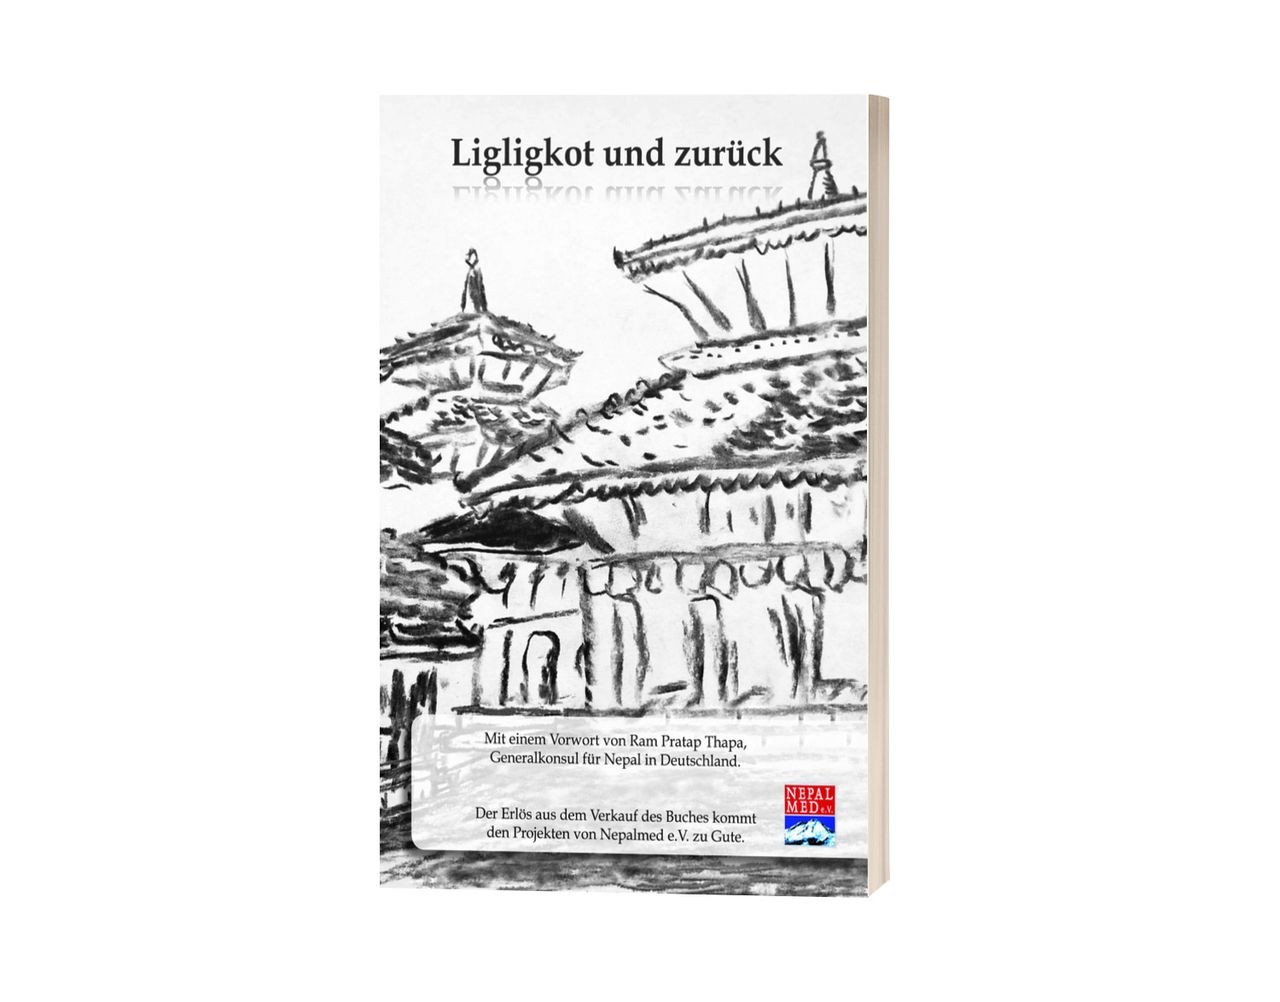 Liglikot und zurück – Kurzgeschichten aus Nepal